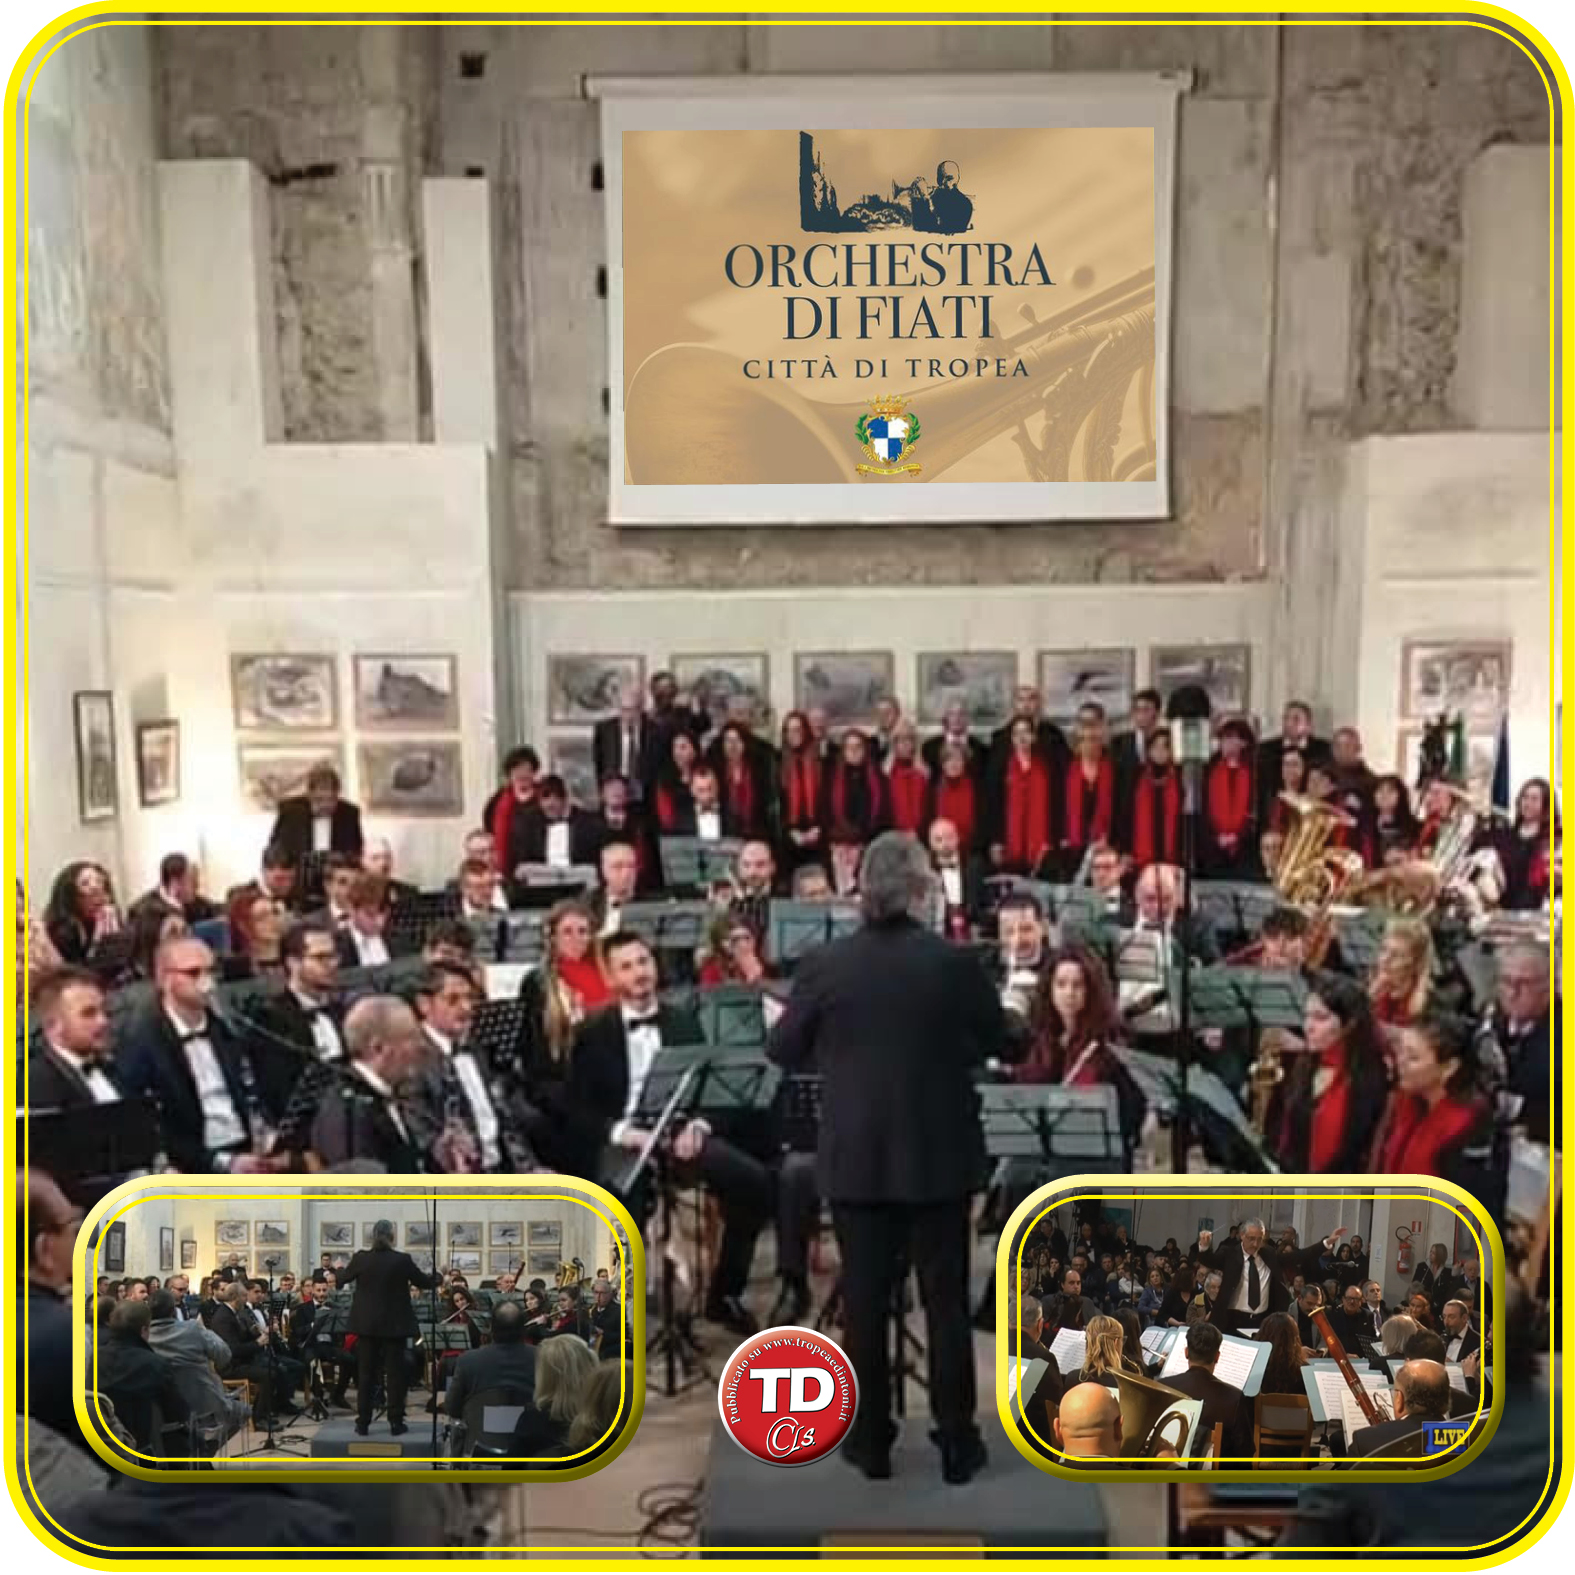 L'Orchestra di Fiati Città di Tropea si presenta al pubblico presso l’Auditorium S. Chiara